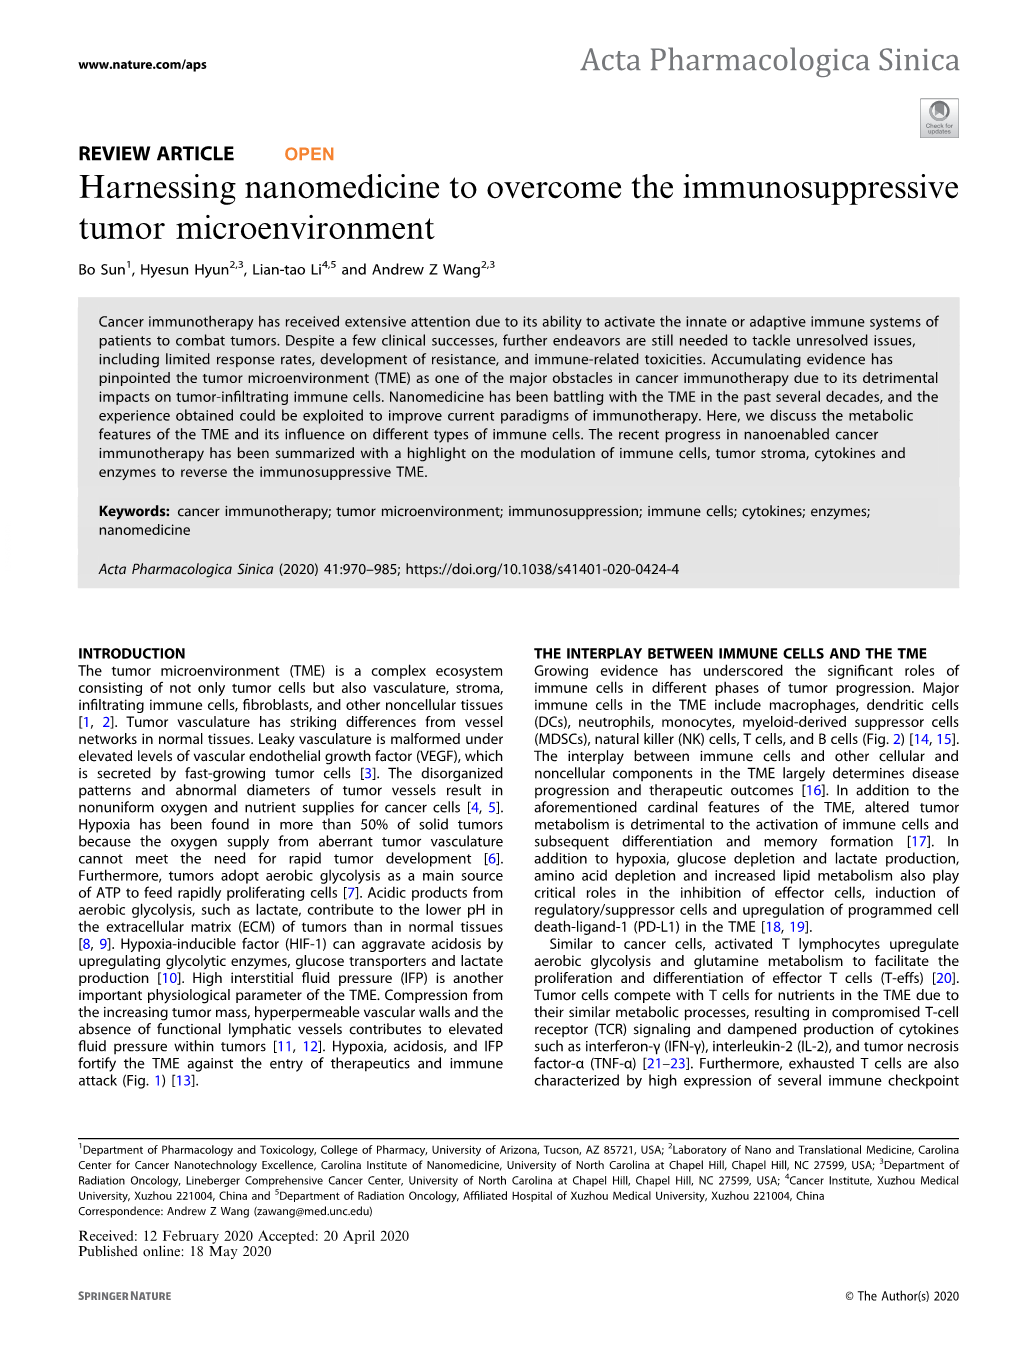 Harnessing Nanomedicine to Overcome the Immunosuppressive Tumor Microenvironment